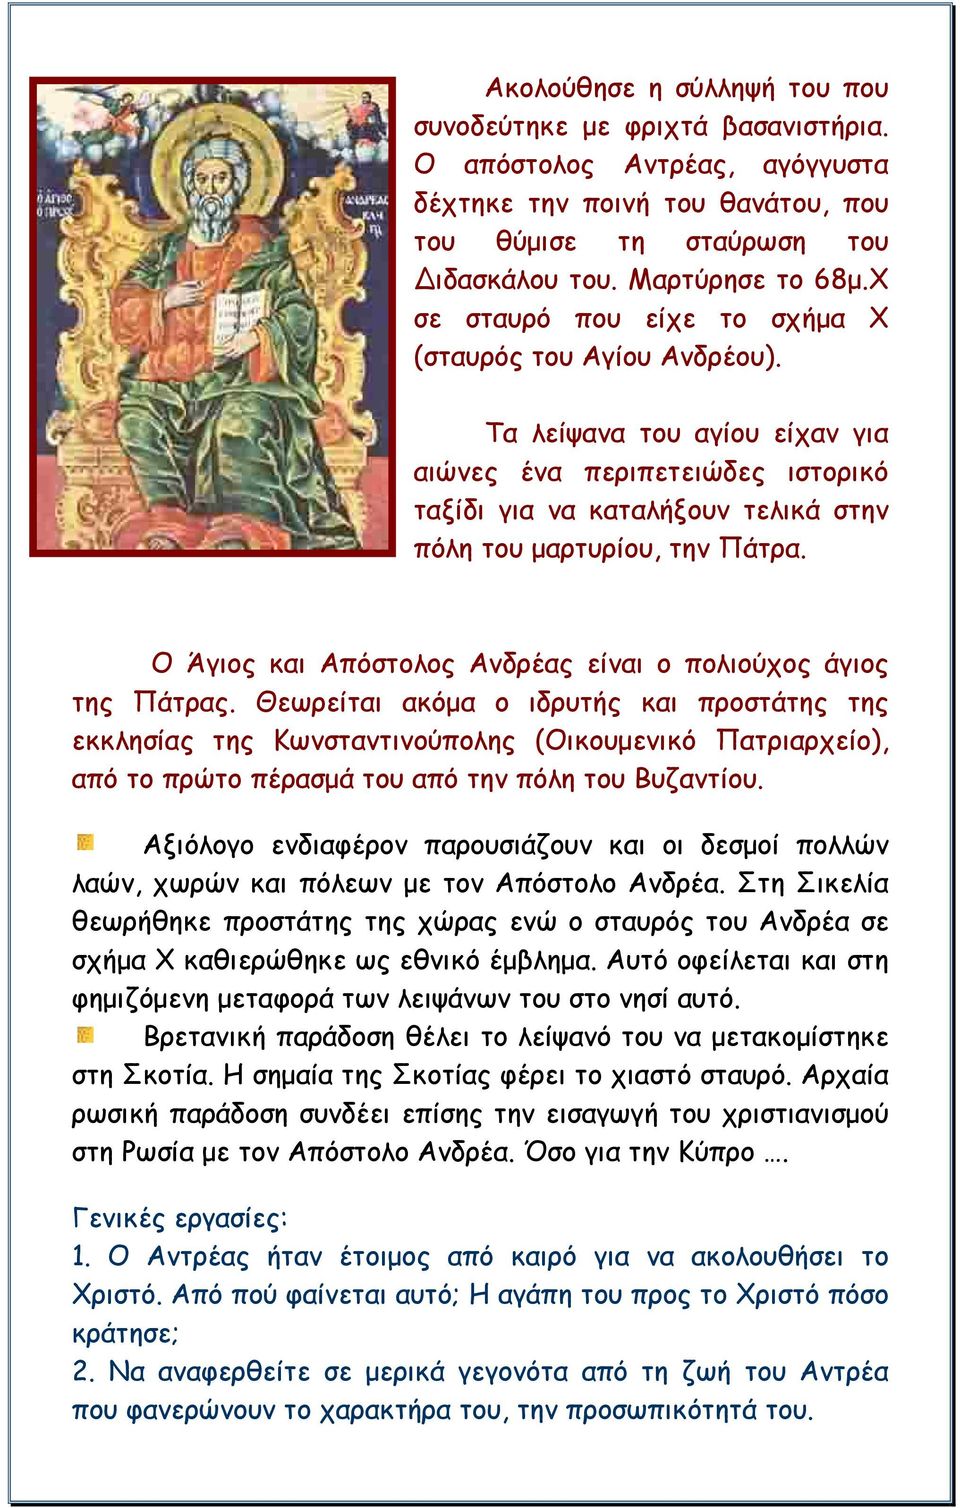 Ο Άγιος και Απόστολος Ανδρέας είναι ο πολιούχος άγιος της Πάτρας.